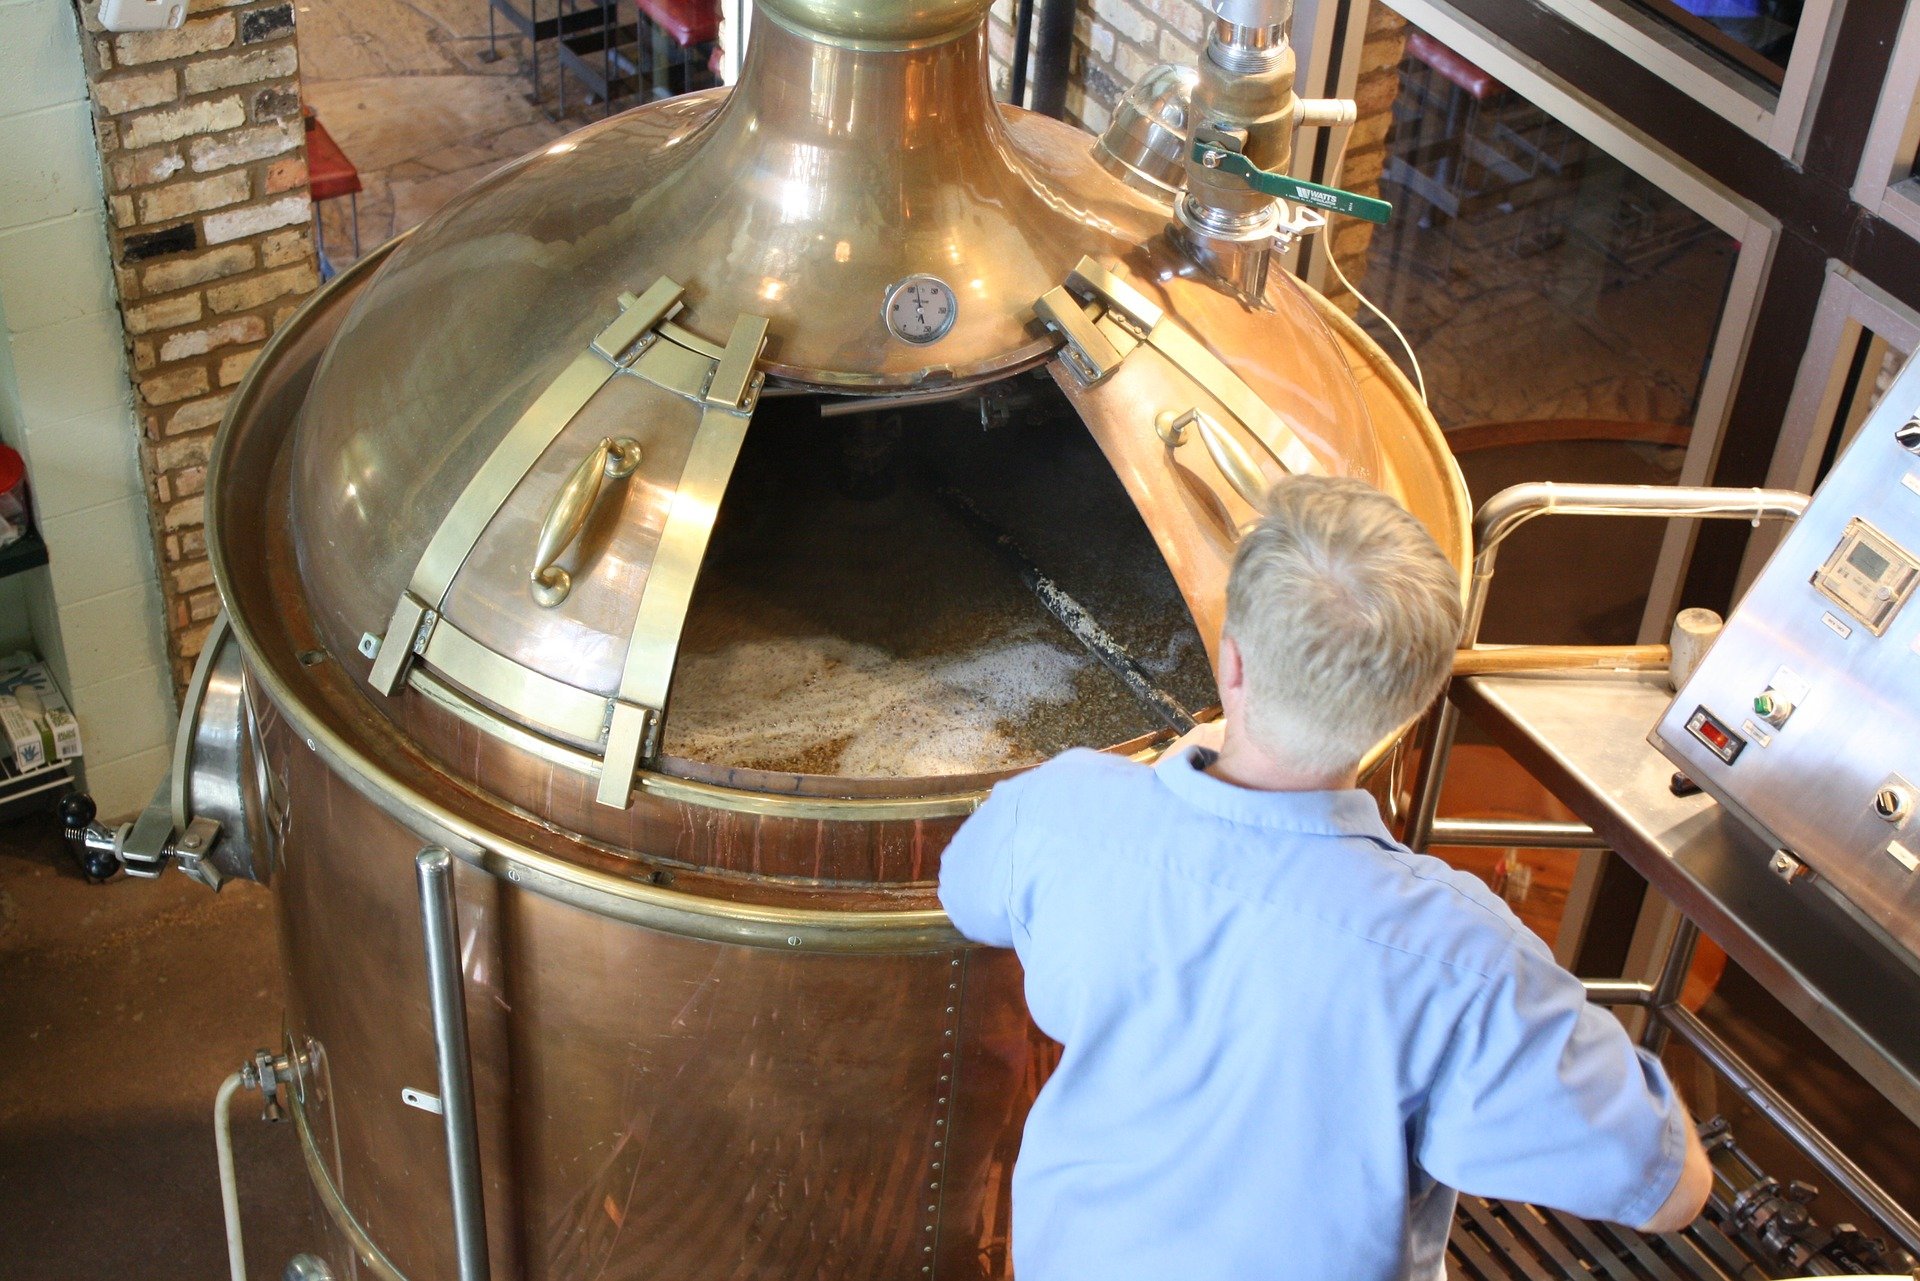 Odpowiedni sprzęt do Twojego browaru rzemieślniczego. Poznaj bliżej zbiorniki fermentacyjne do piwa!